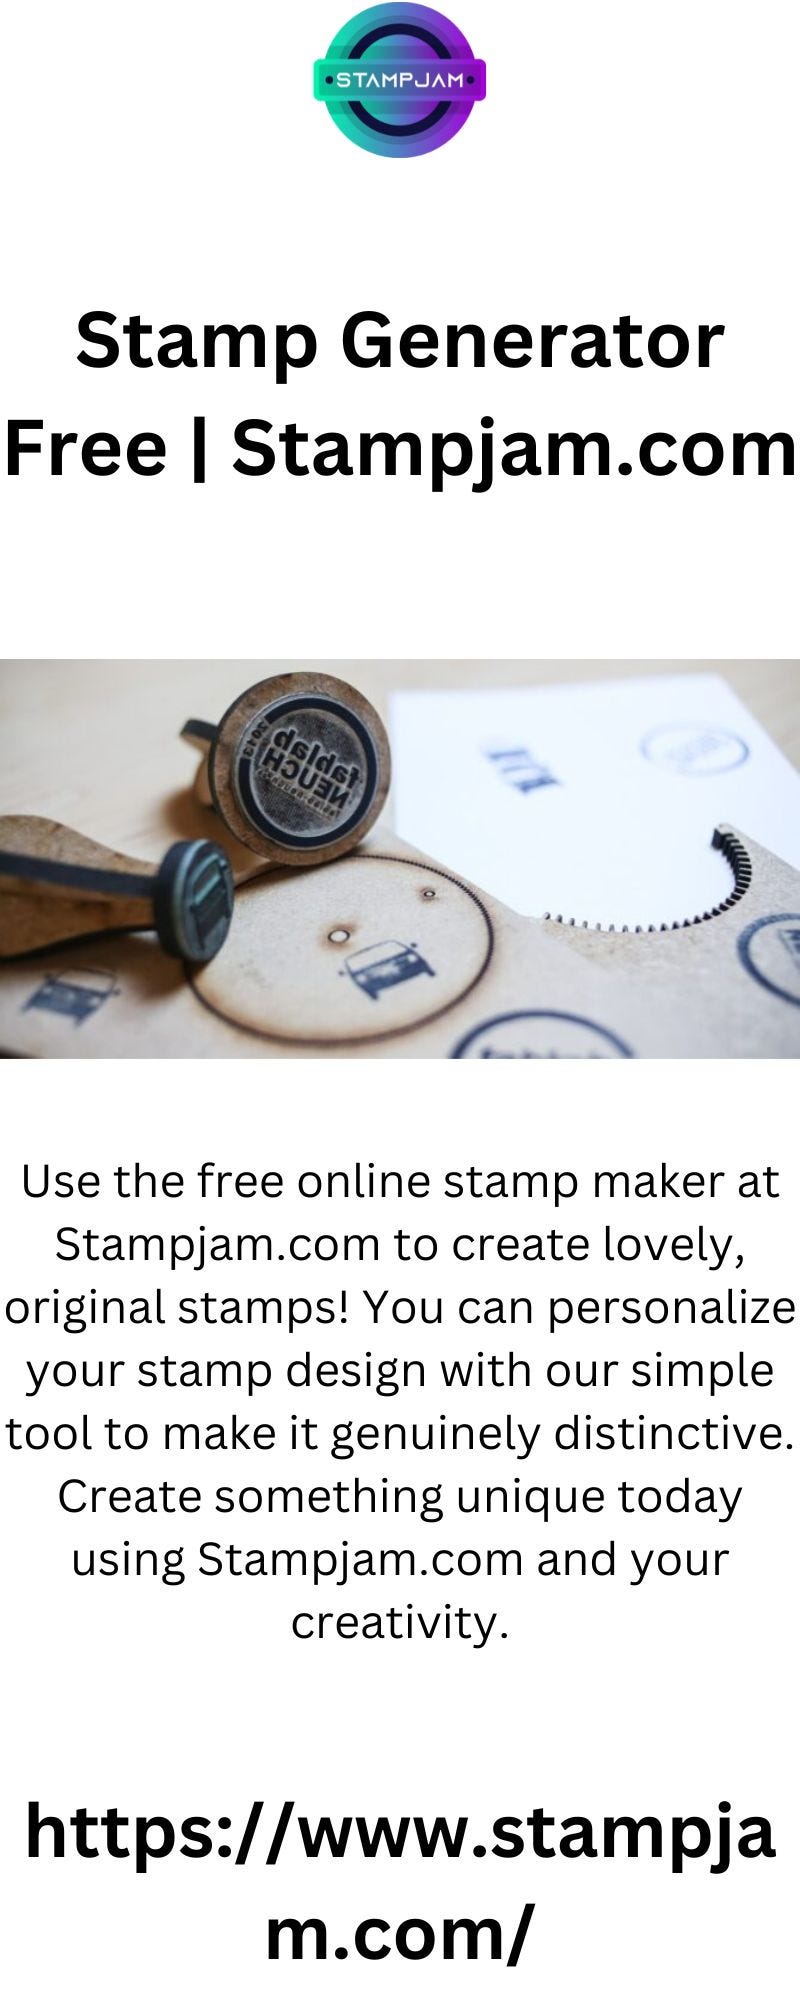 Stamp Generator Free | Stampjam.com - Stampjam - Medium